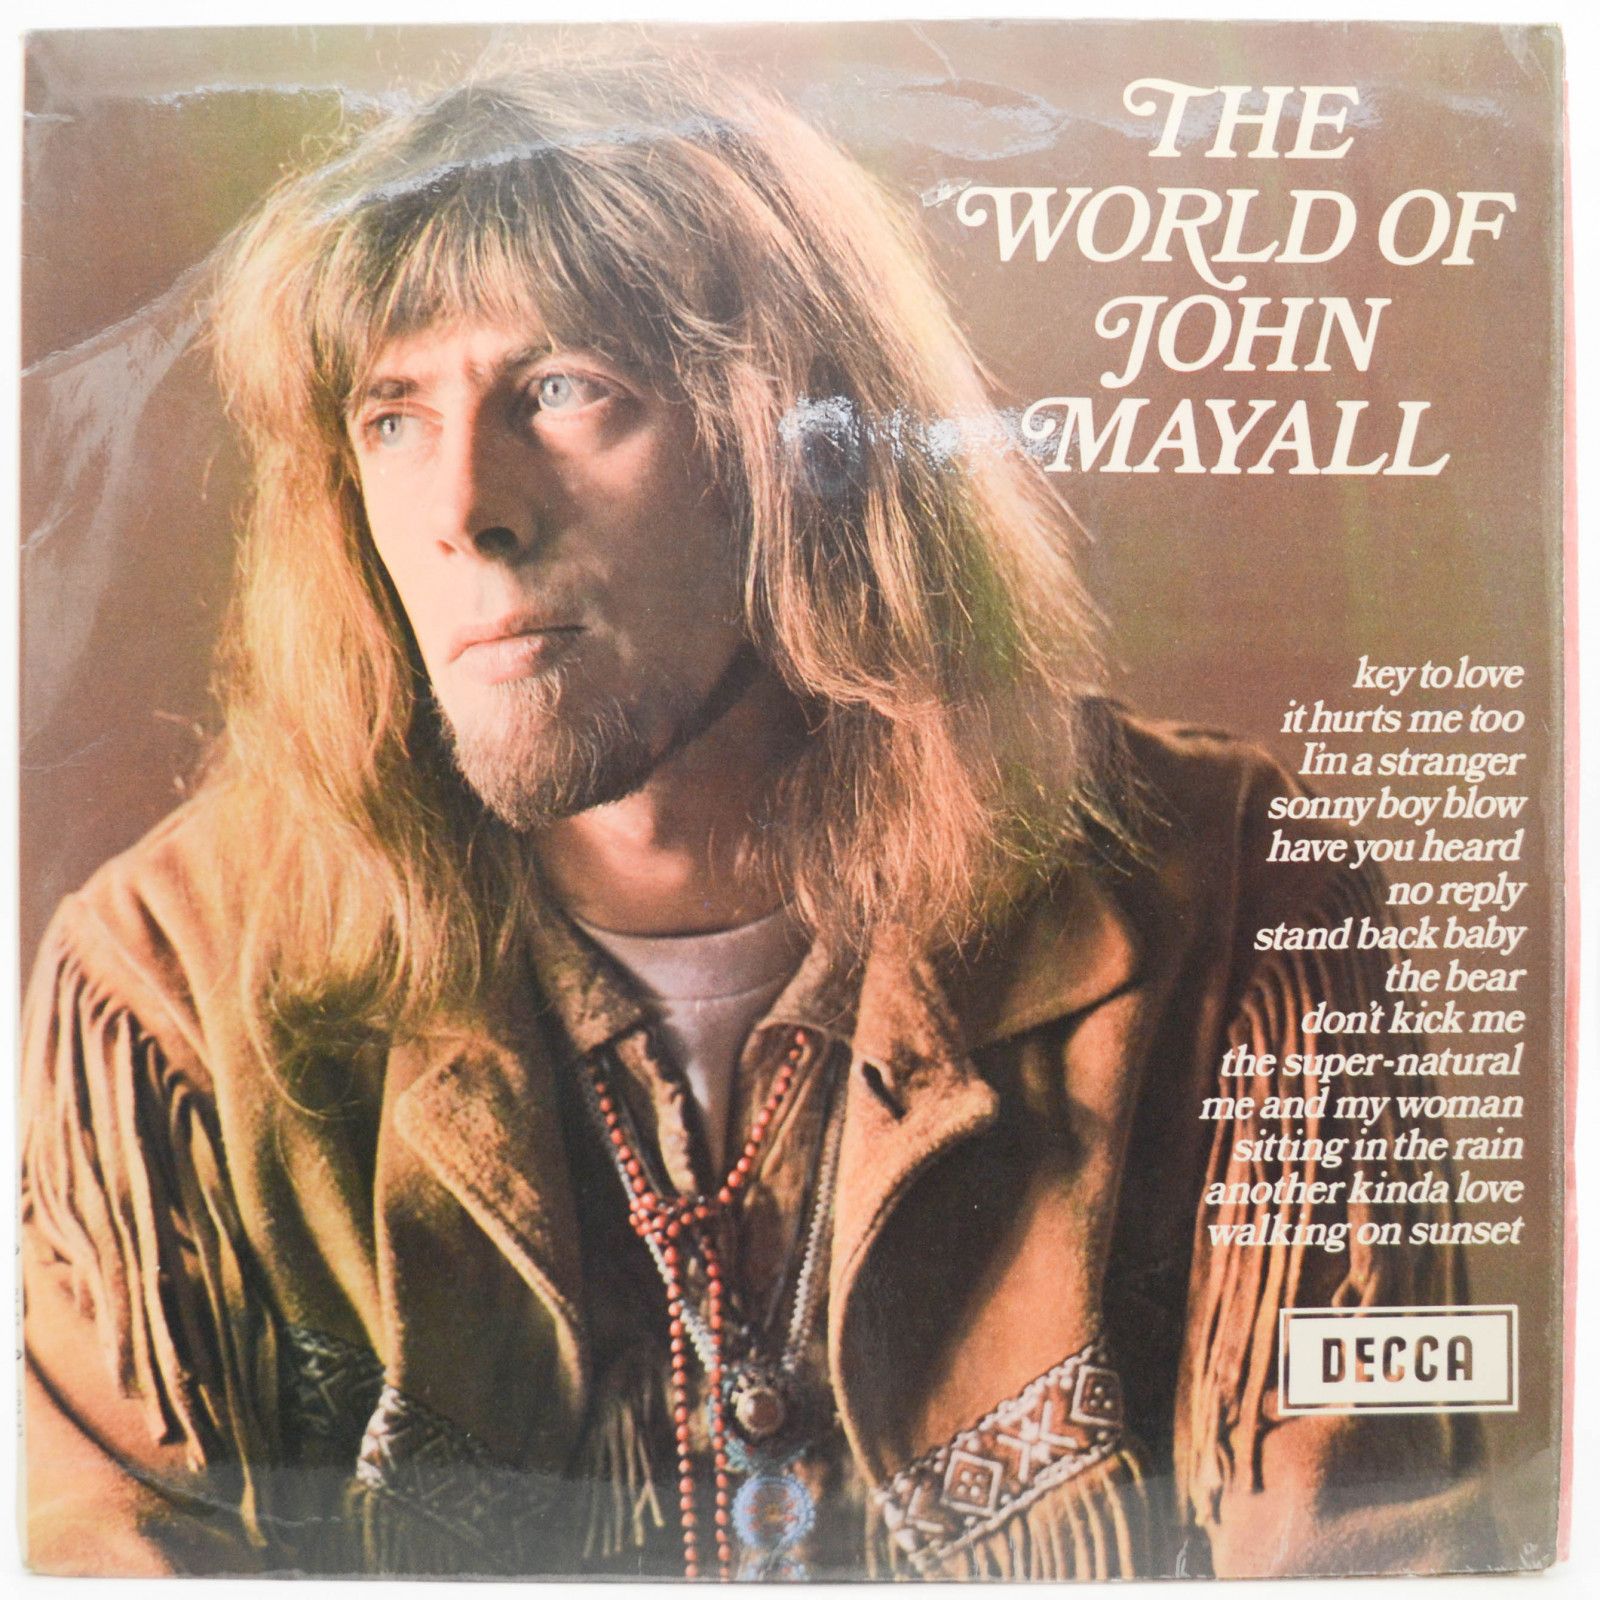 John Mayall — The World Of John Mayall (UK), 1970